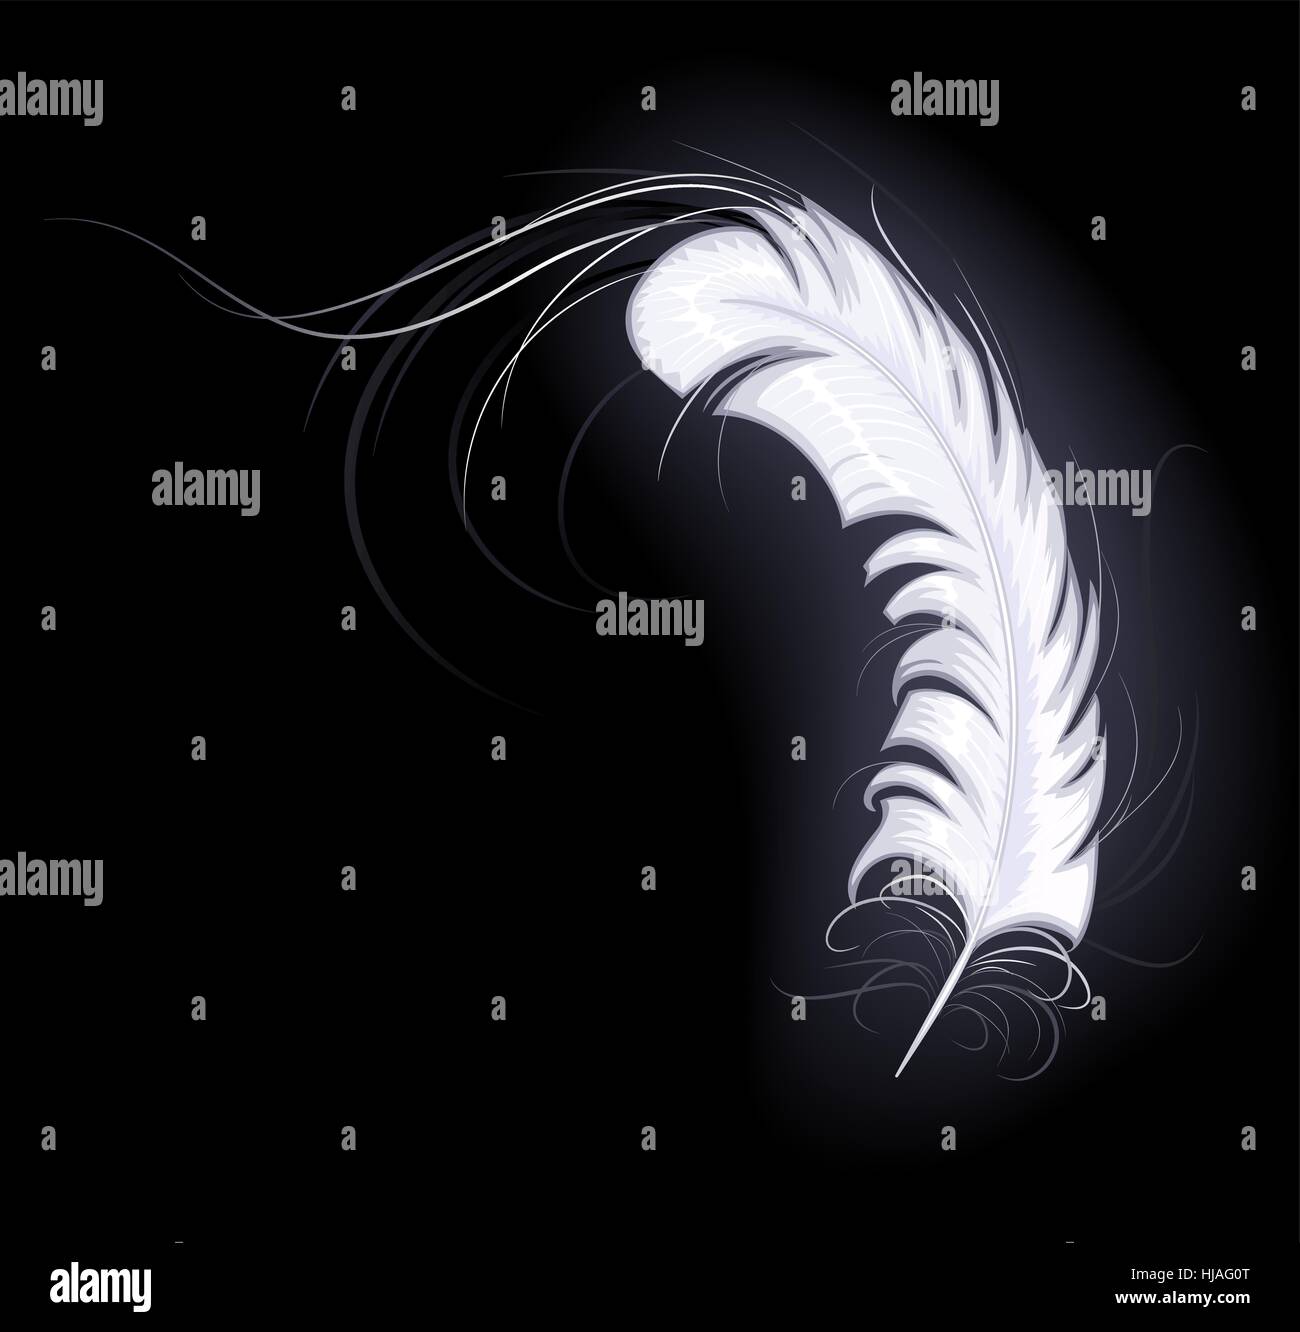 Plume blanche d'ange avec de longues facile les spiraux brille sur un fond sombre Illustration de Vecteur